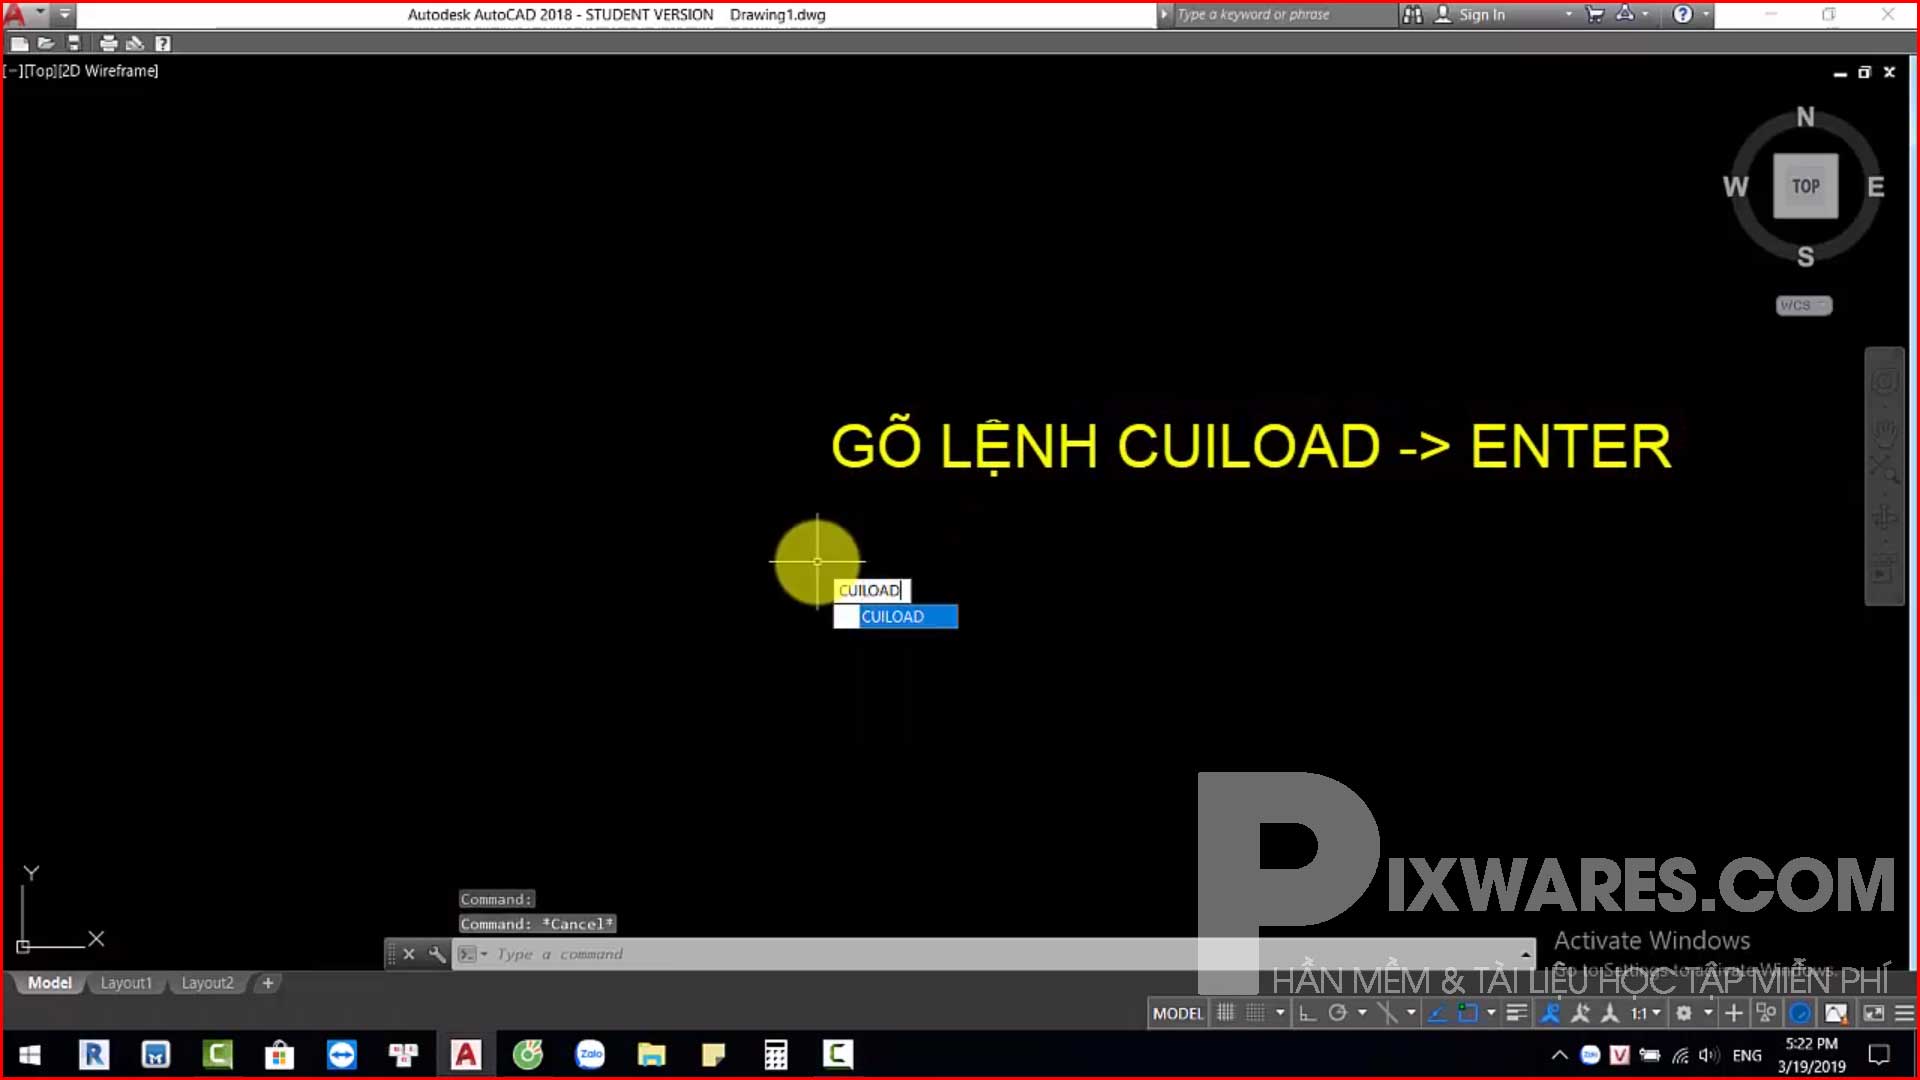 go-lenh-cuiload-enter